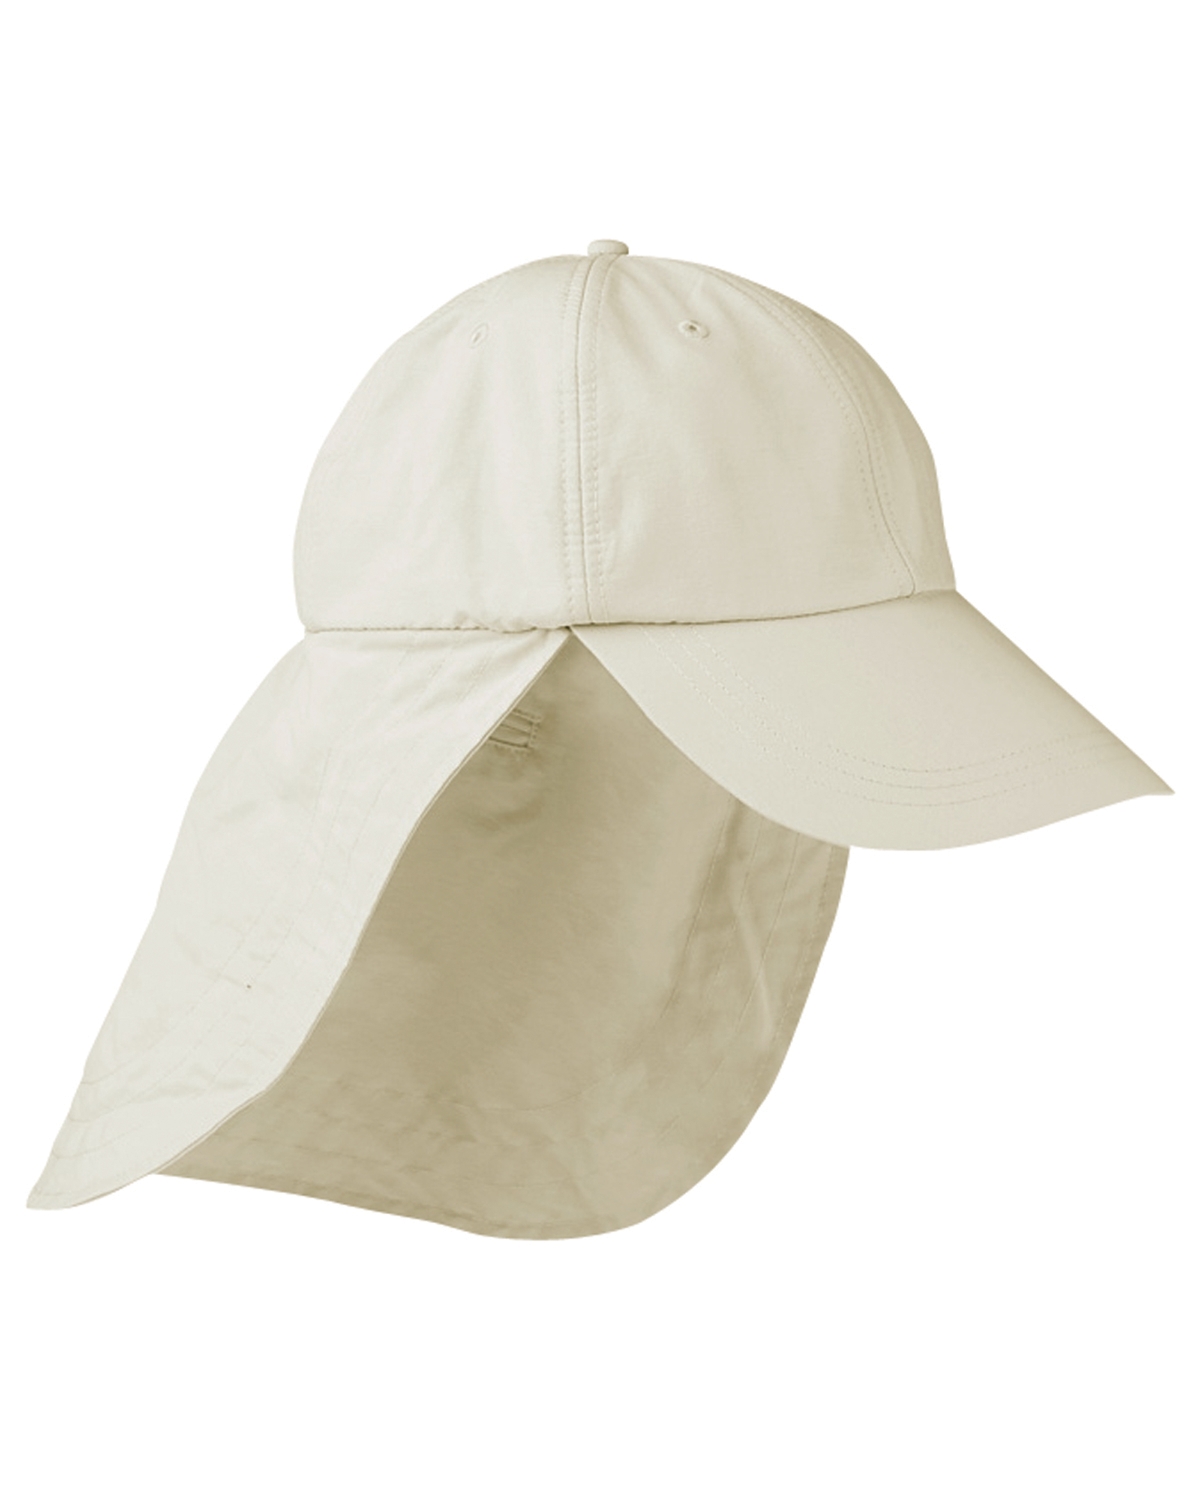 Adams Extreme Outdoor  Sun-Block Cap Hat w/ Neck Cape & Clip Cord 4" Bill 